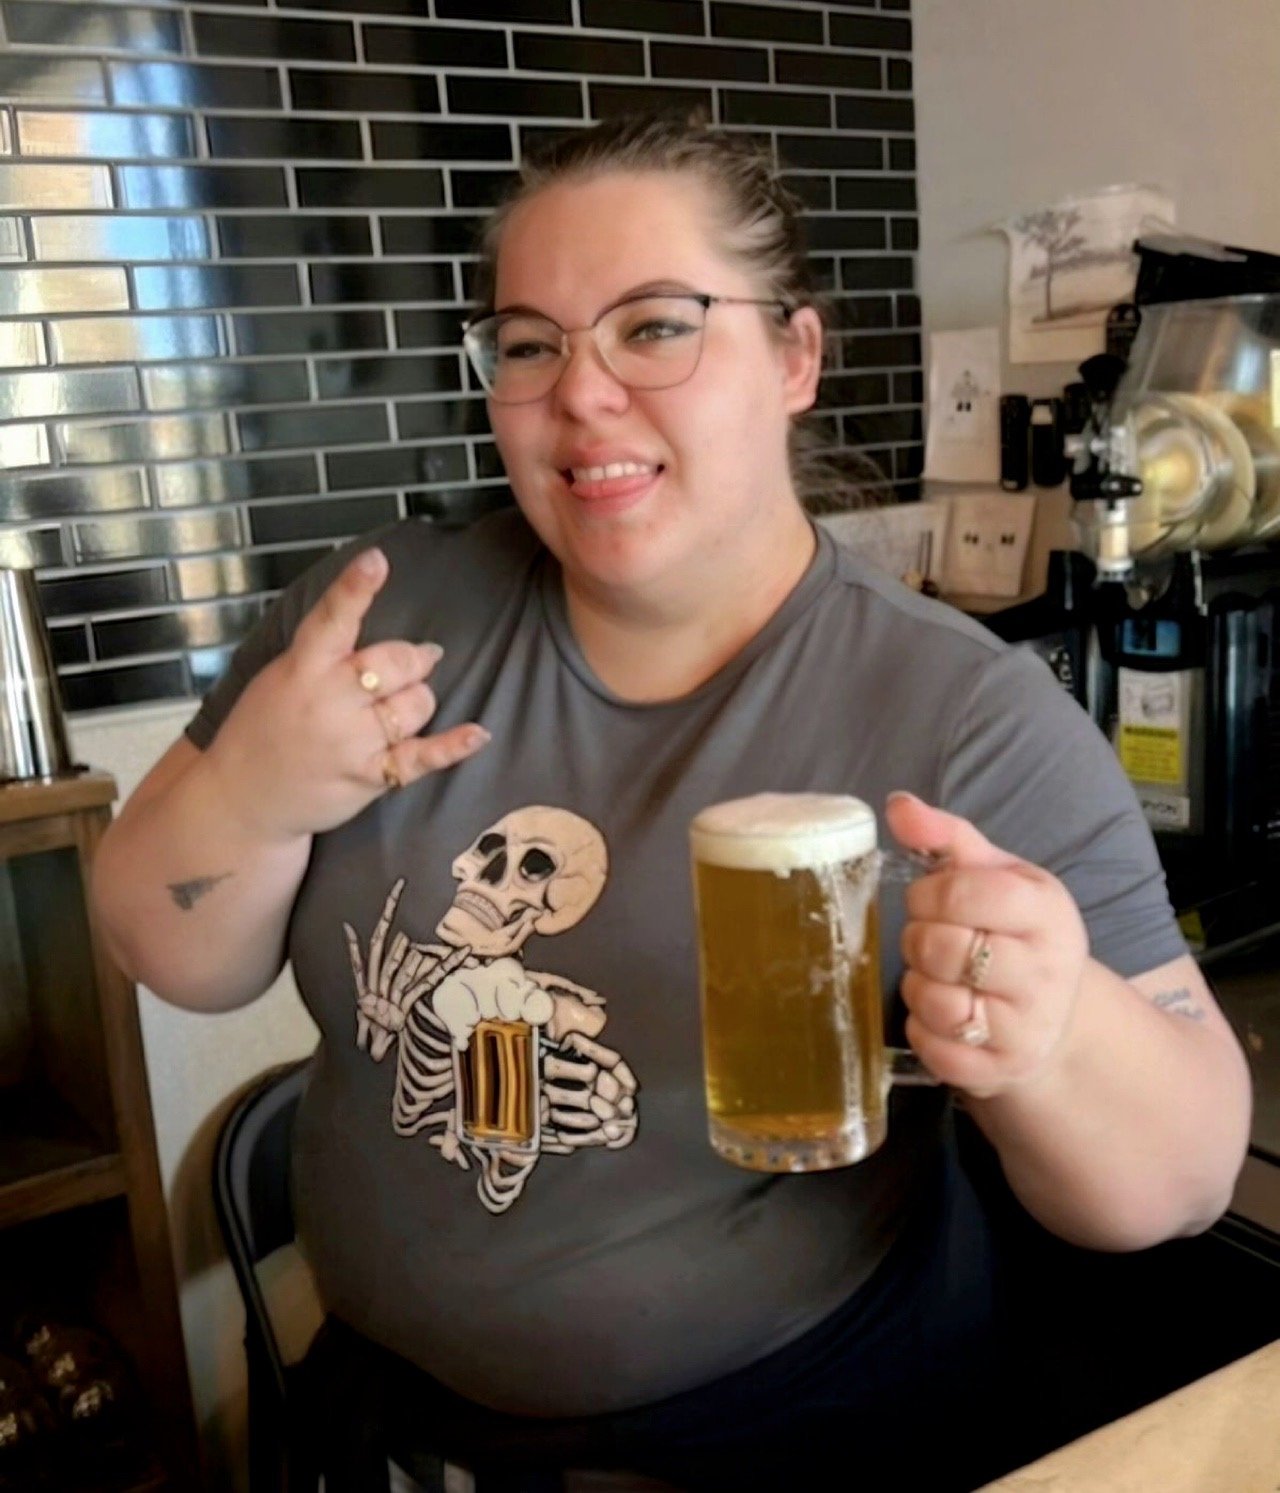 Rock out this Sunday with @rachel.reinhart 🤘

#sundayfunday #weekendfun #beertender #rockout #beerinspires #ohiobeer #drinklocal #craftbeersnob #beertime #beerstagram #independentbrewery